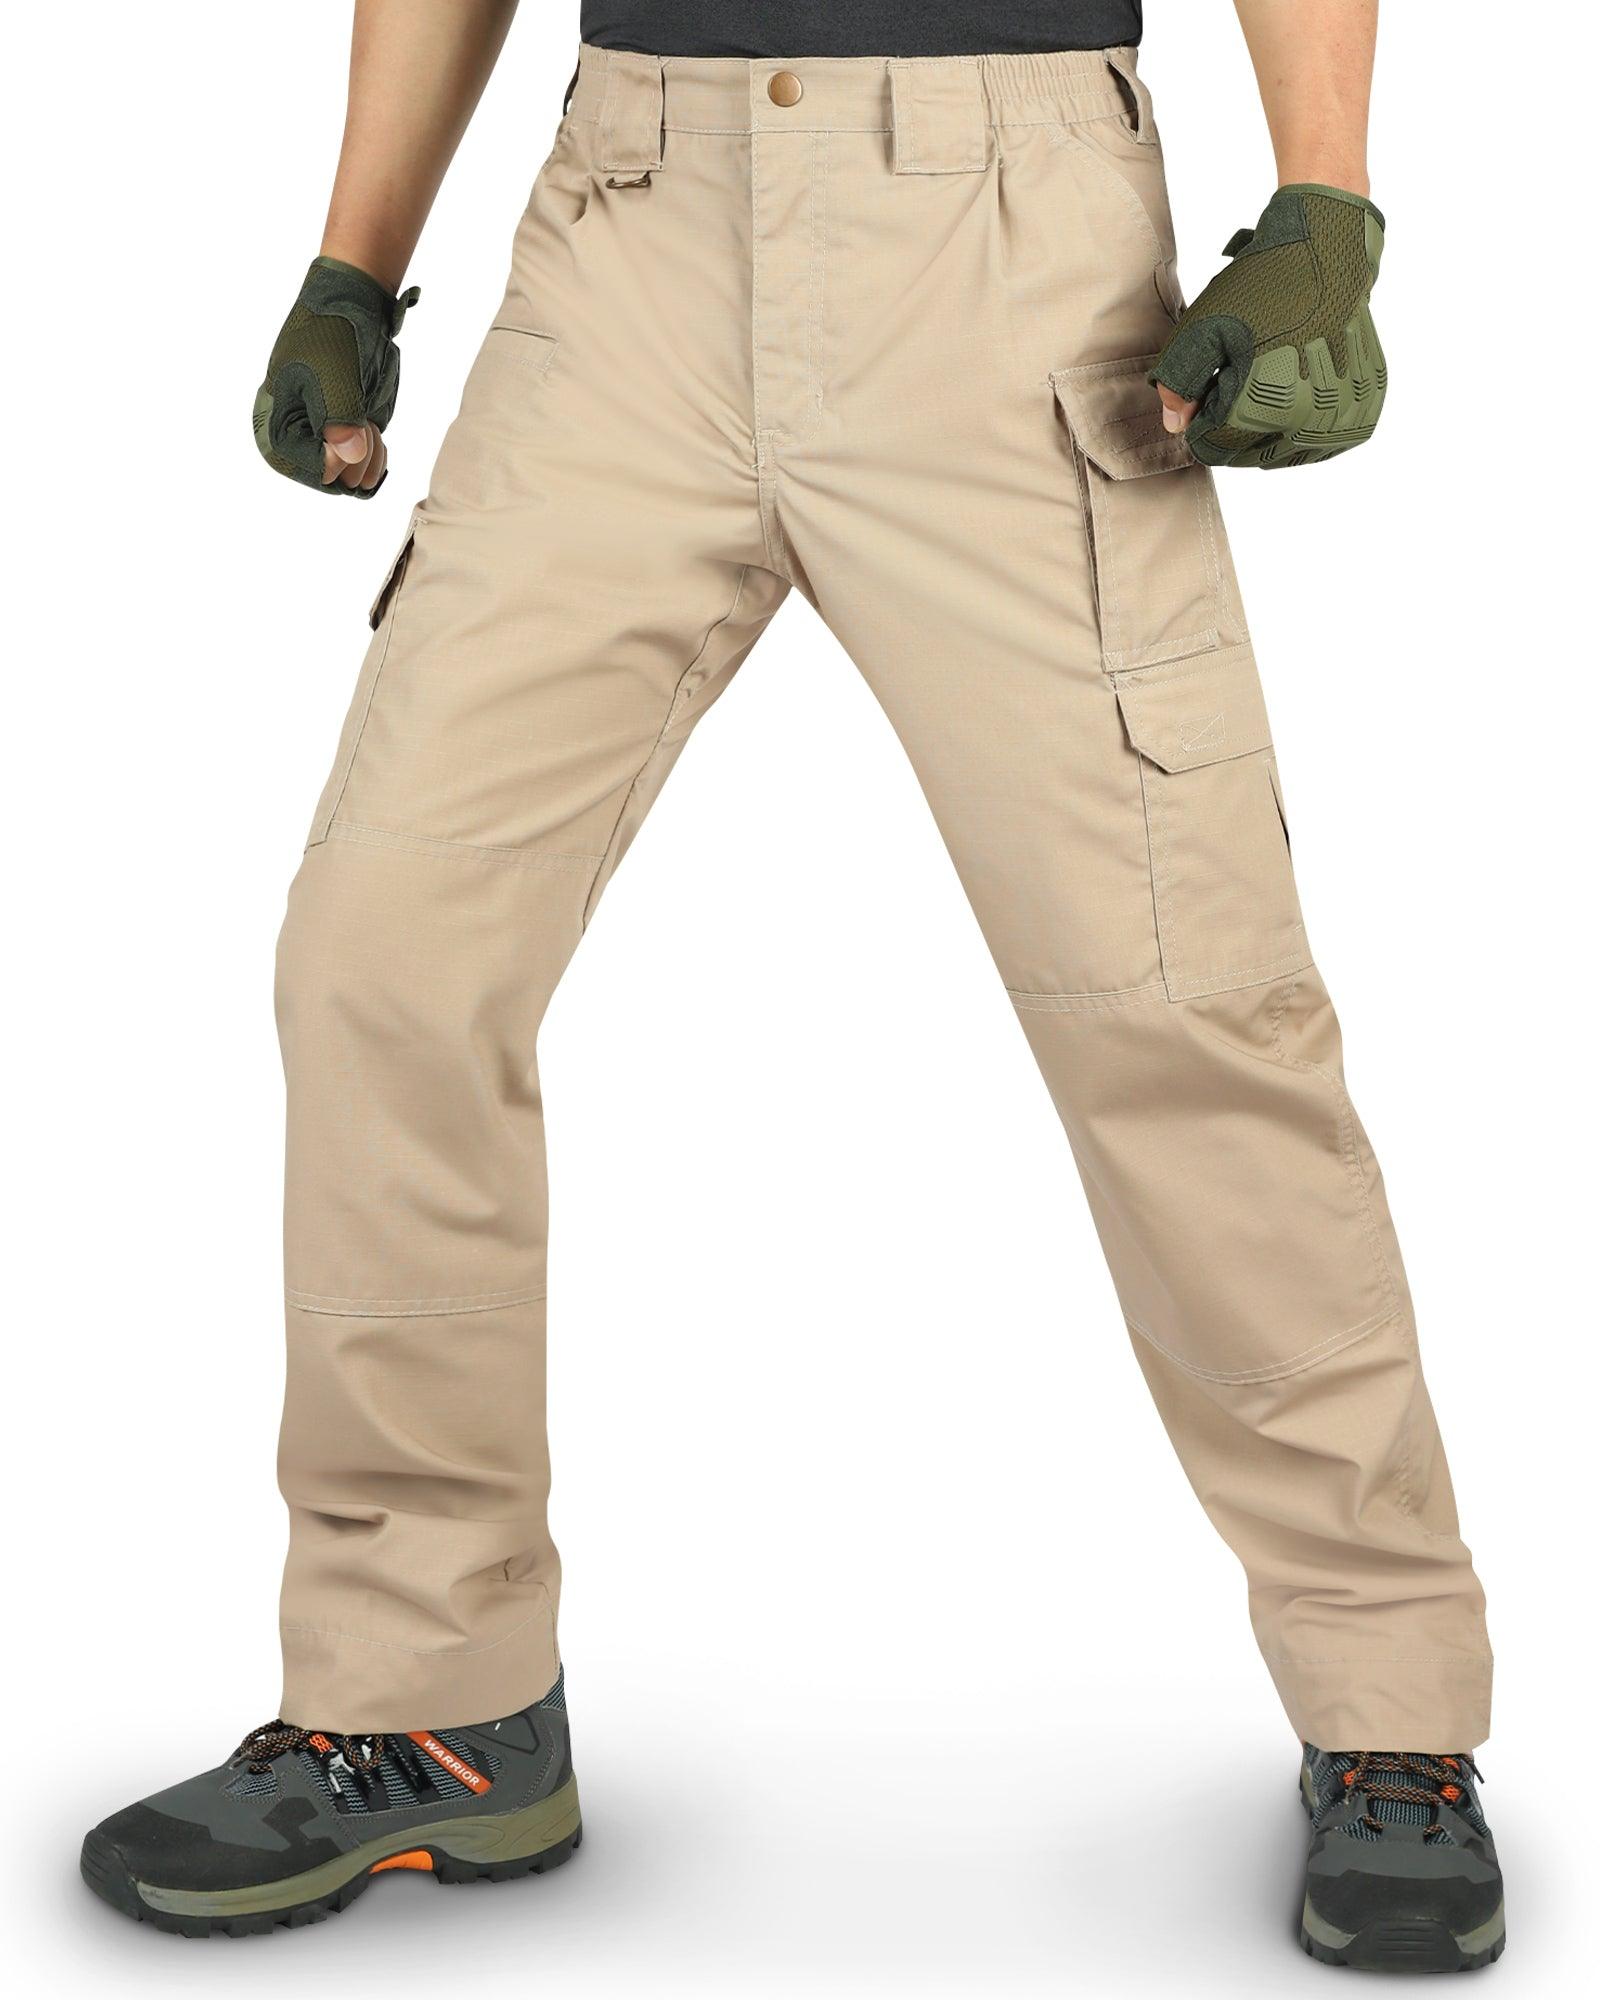 Men's Tactical Pants, Water-Resistant Ripstop Cargo Pants, Lightweight –  33,000ft